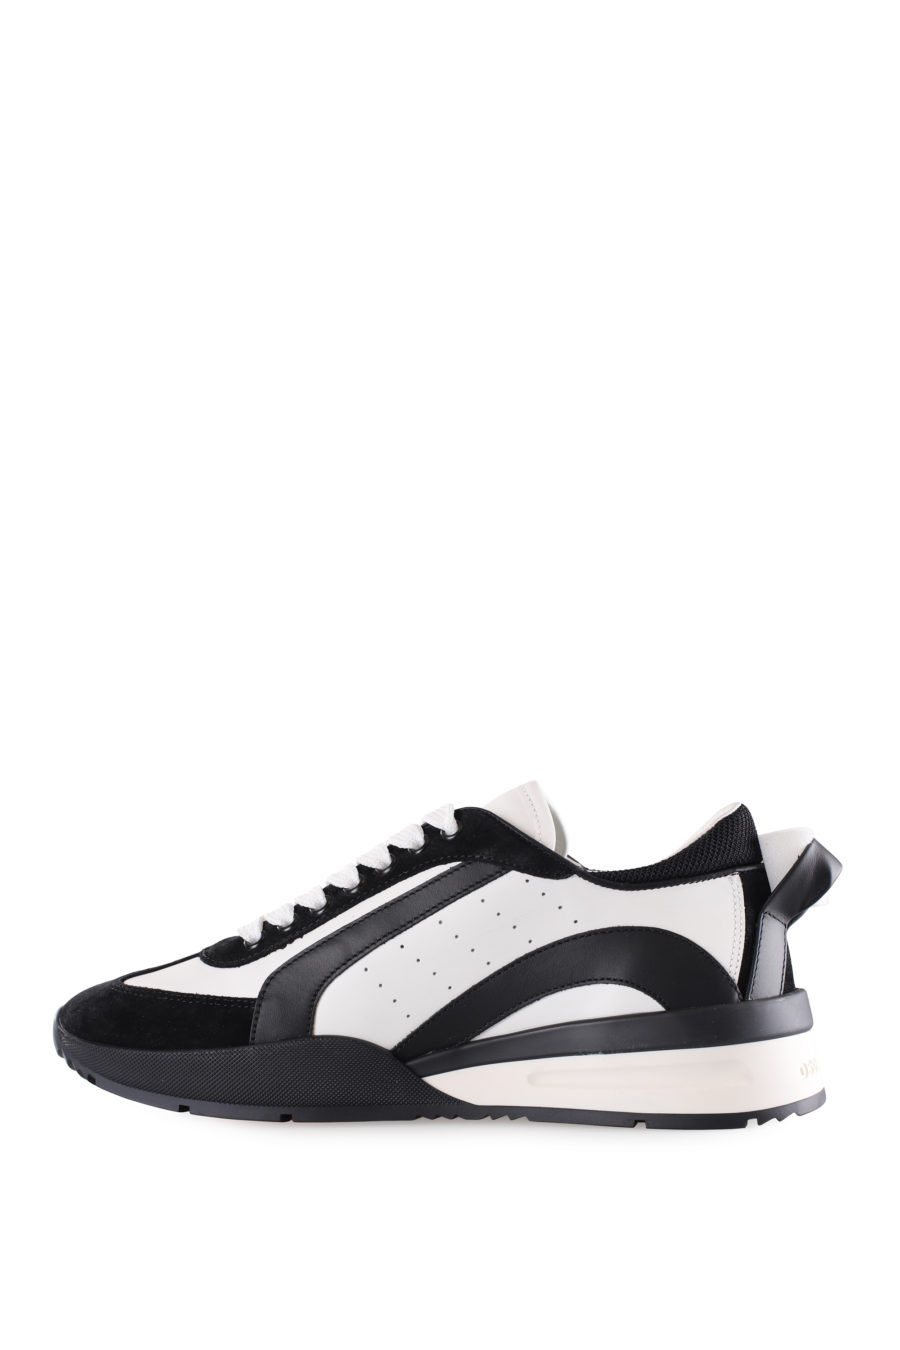 Zapatillas blancas con detalles negros y logo pequeño - IMG 9506